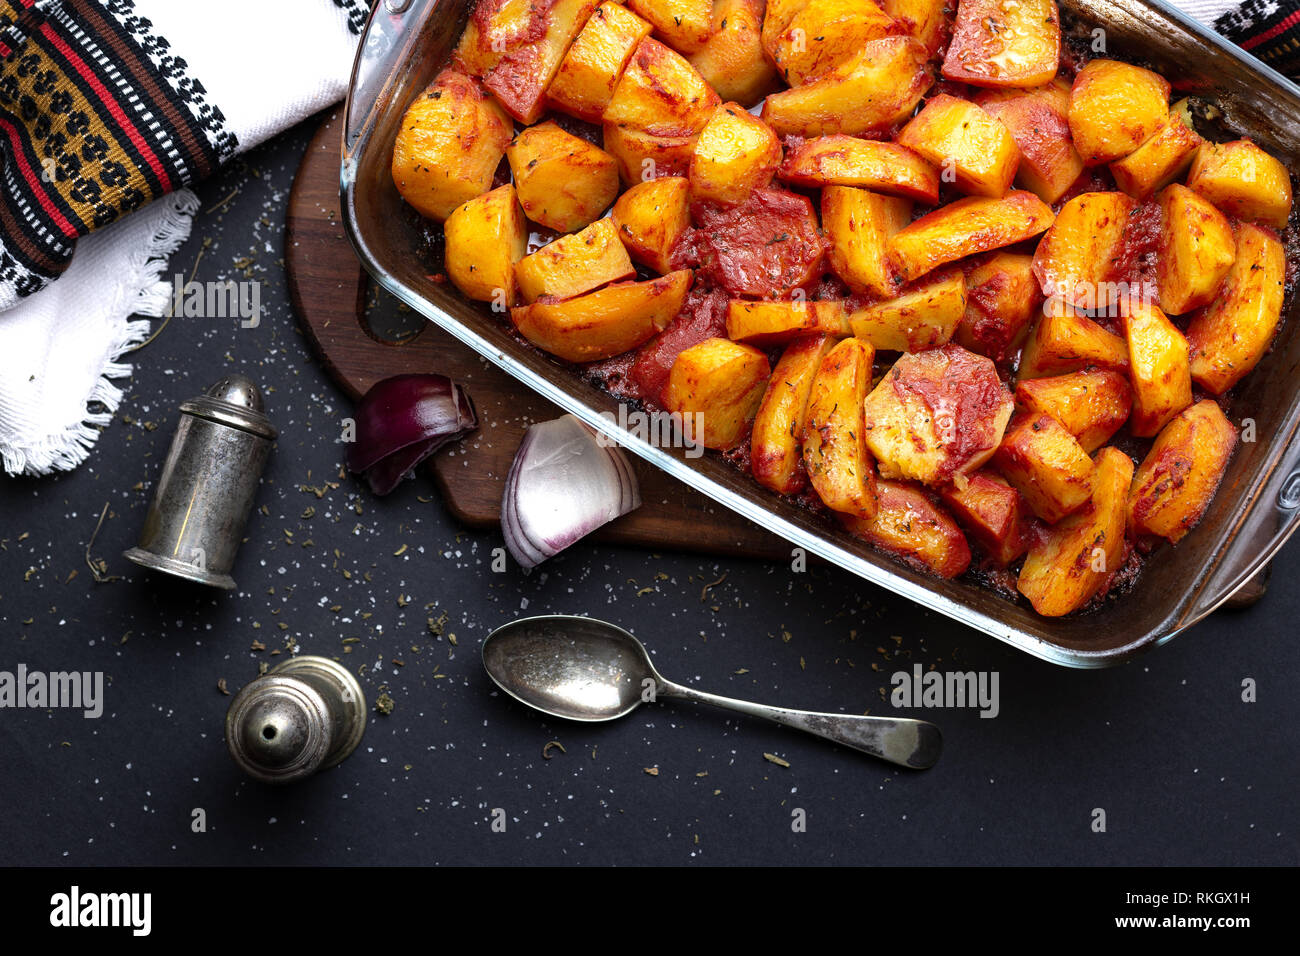 Les pommes de terre cuites au four avec des épices et du jus de tomates sur la plaque de cuisson en verre sur table noire Banque D'Images